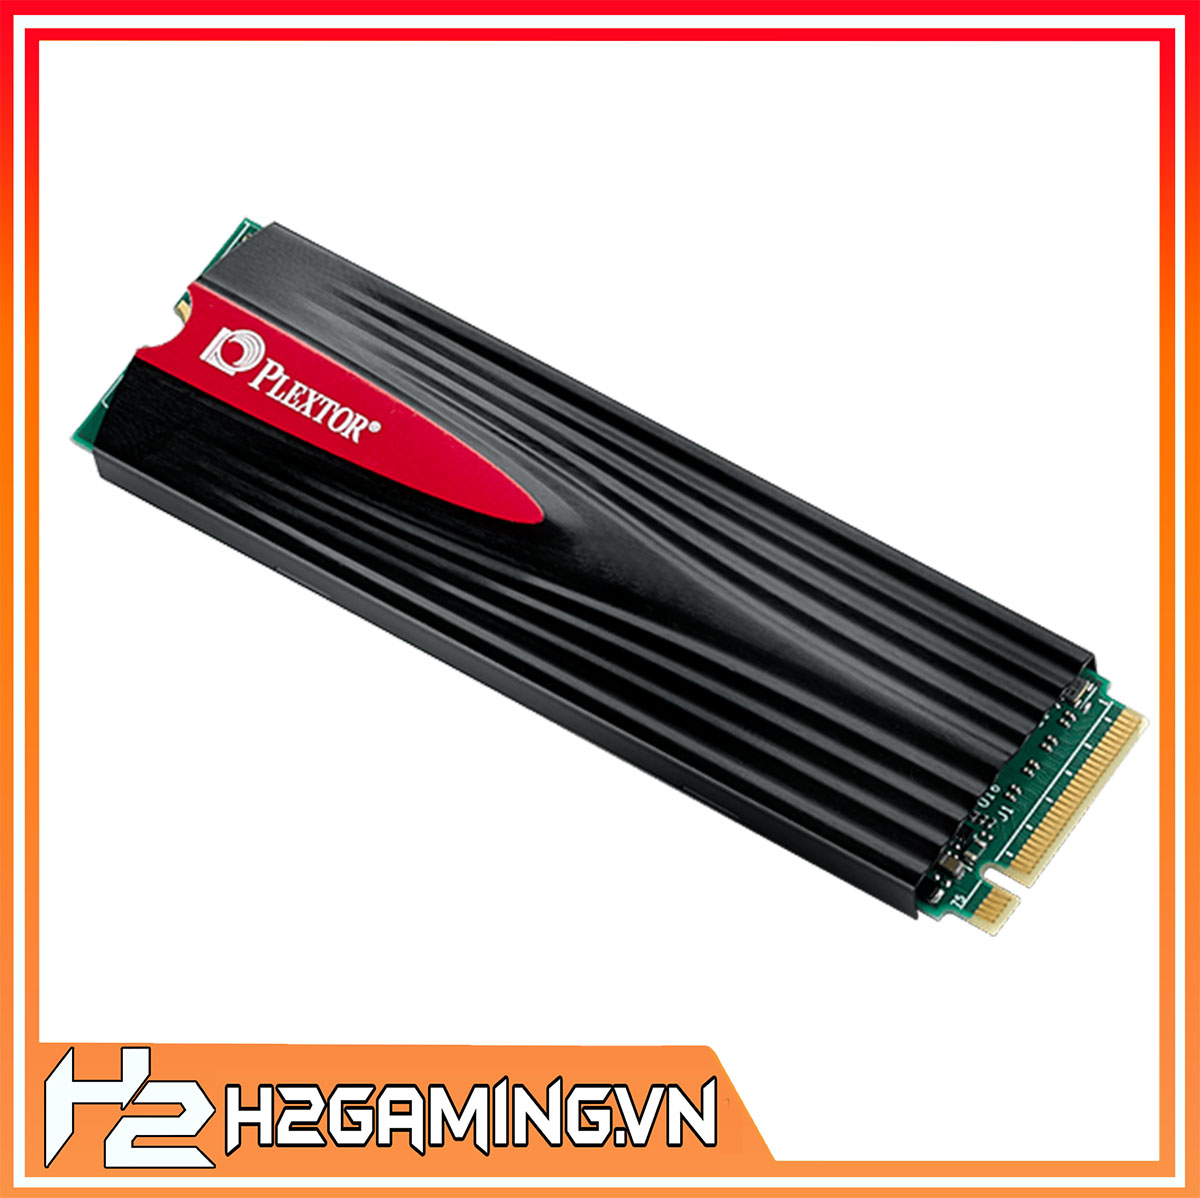 Plextor_PX-256M9PeG_256GB_M.2_PCIe